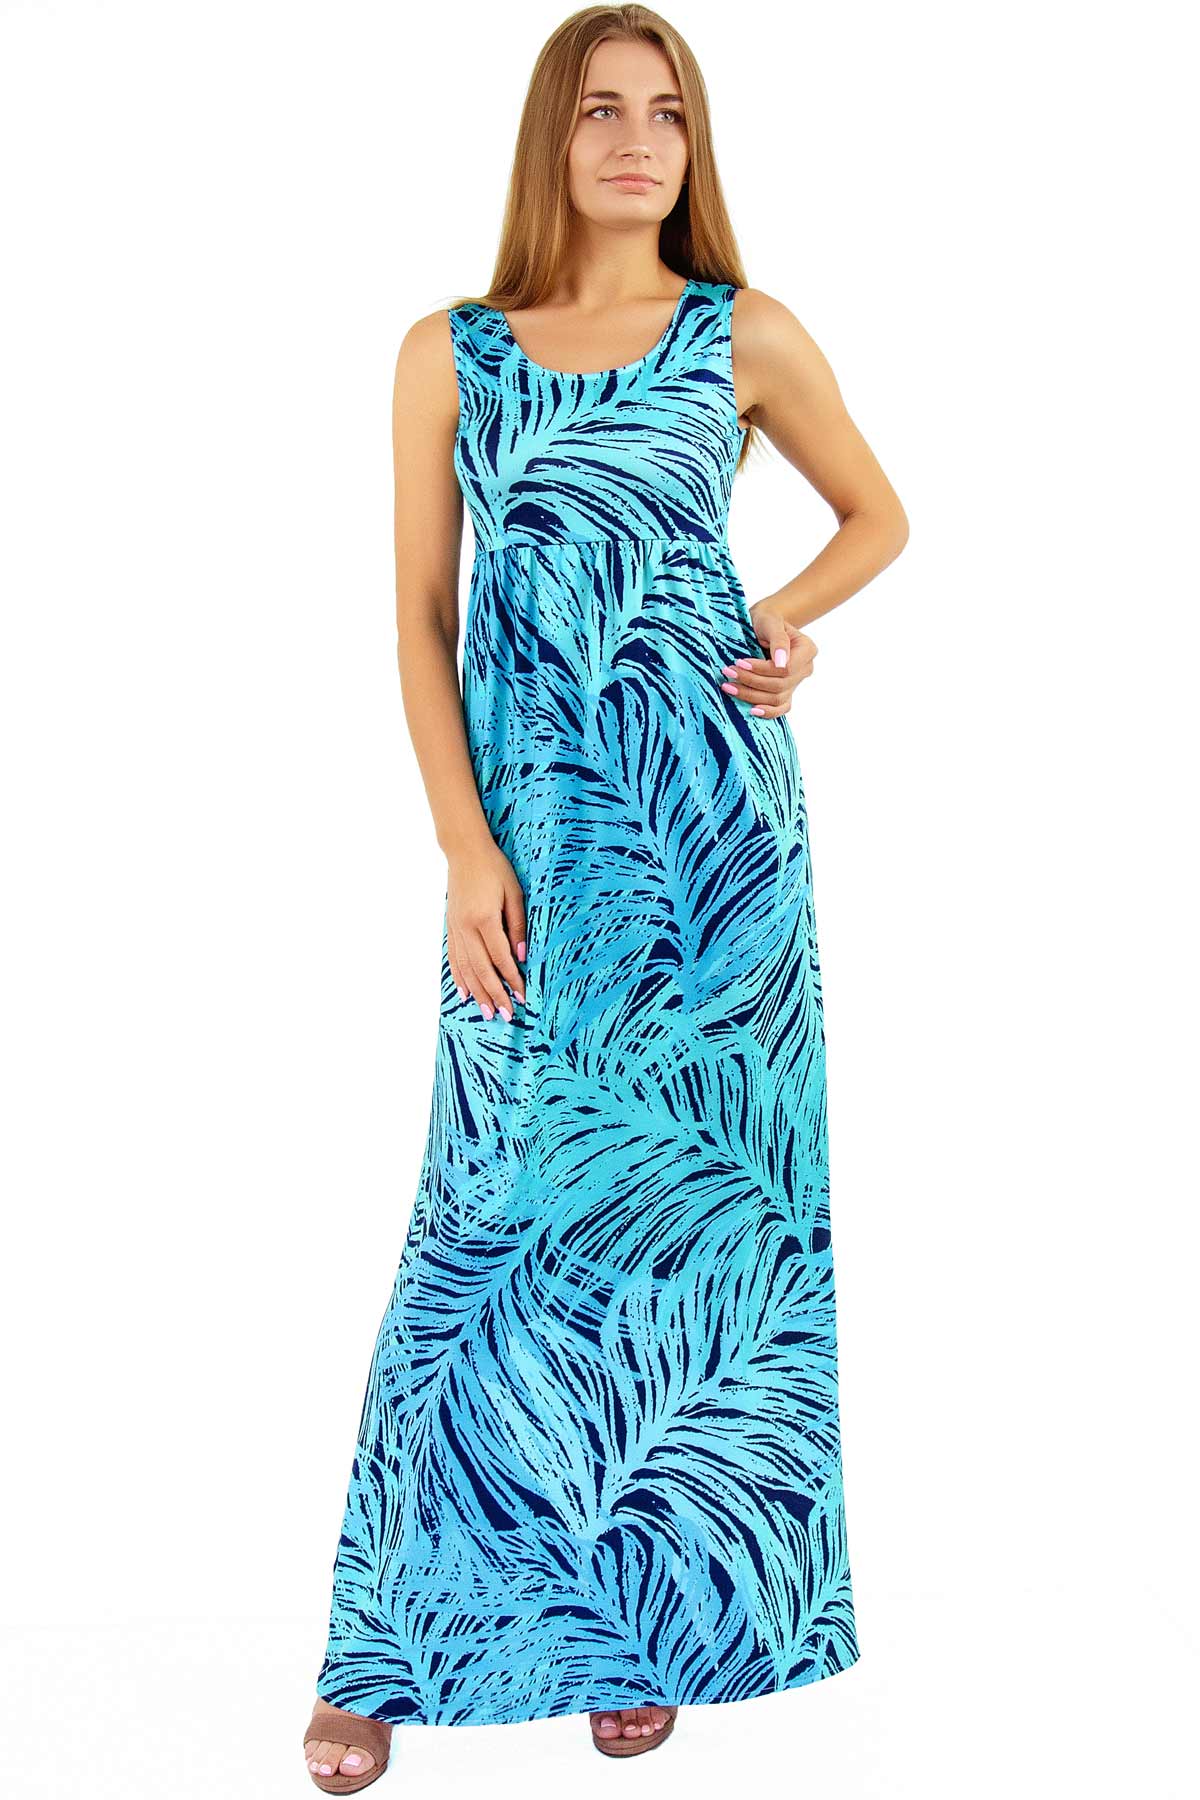 Tropical Dream Bella Palm Leaf Print Beach Summer Maxi Dress - Women - Pineapple Clothing